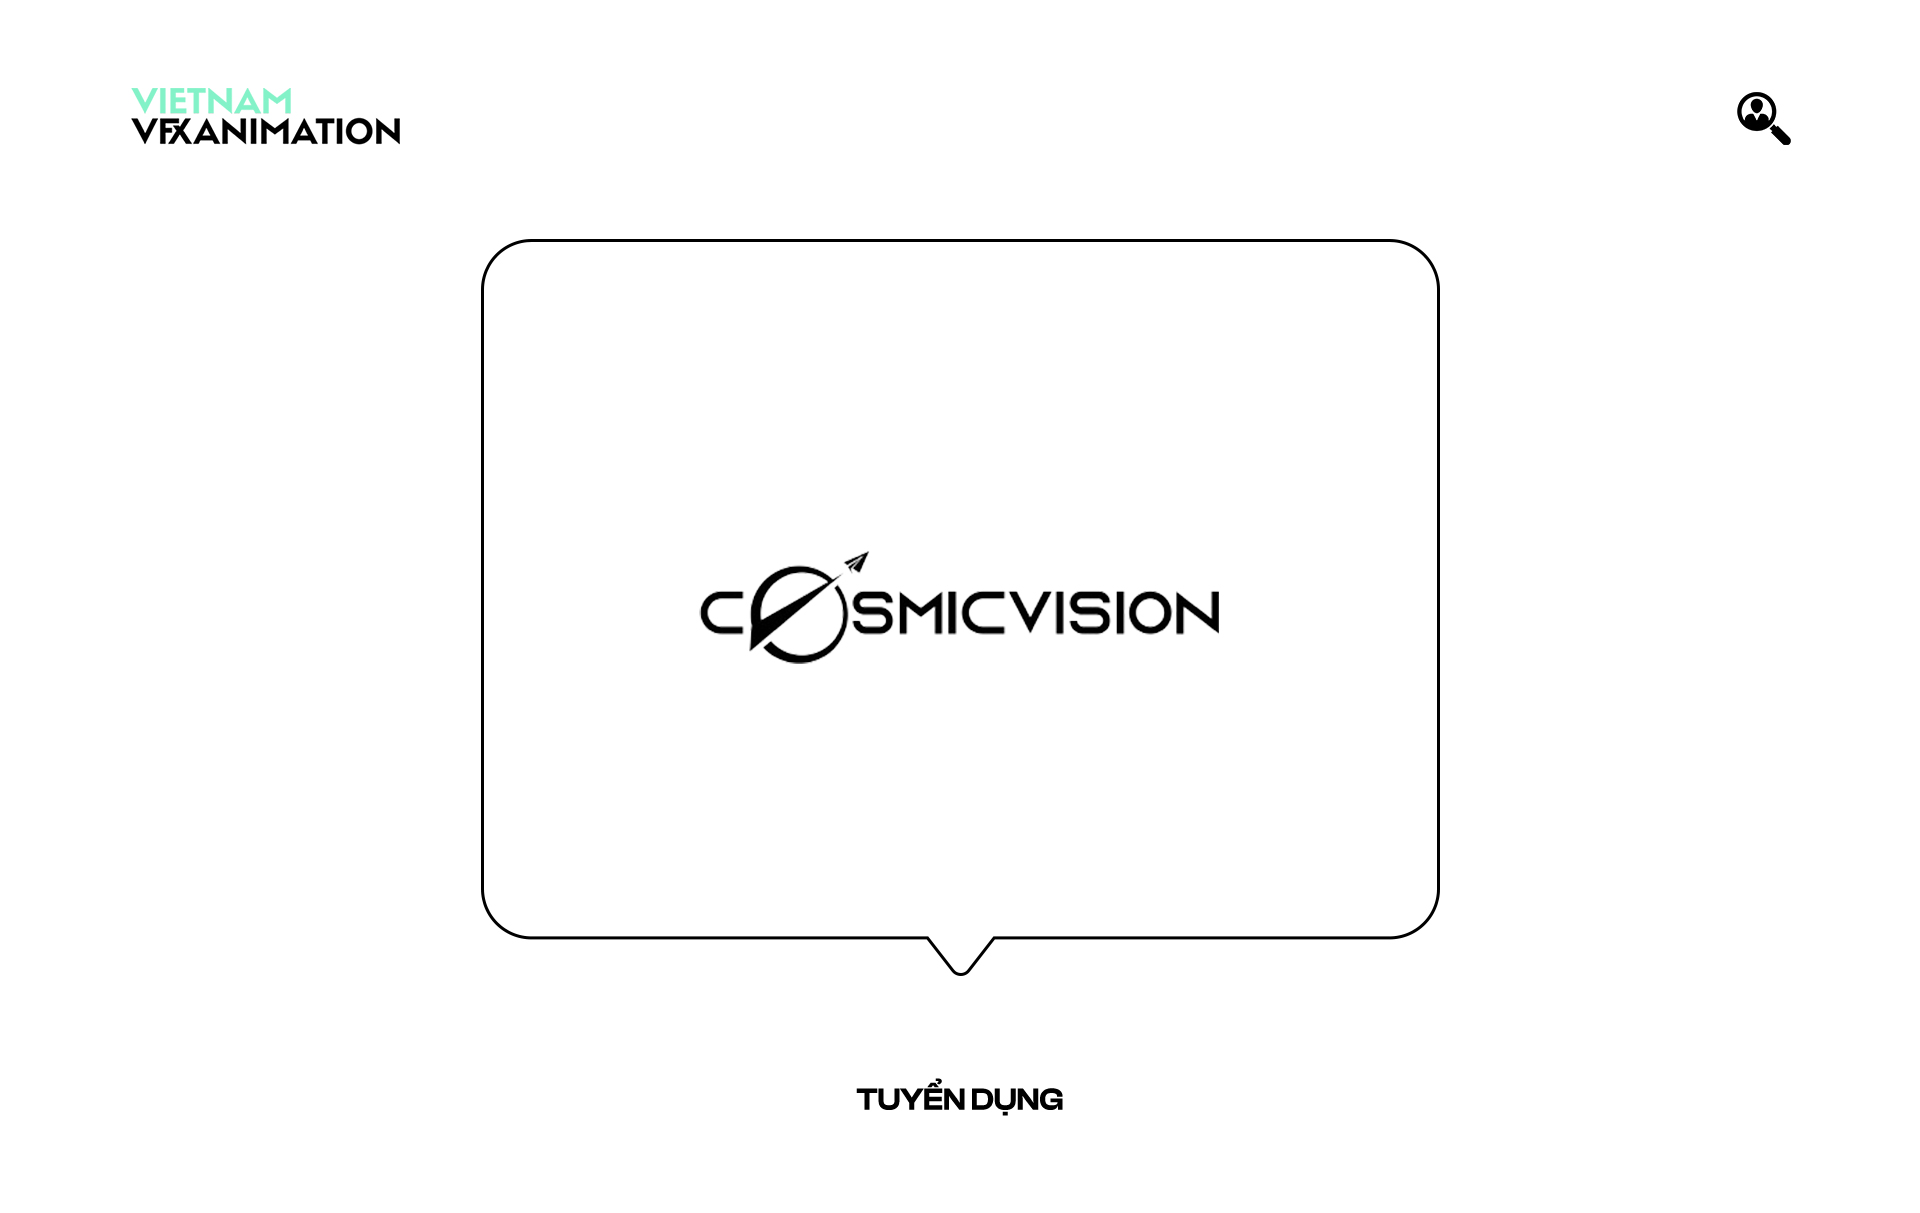 cosmicvision-1500x948